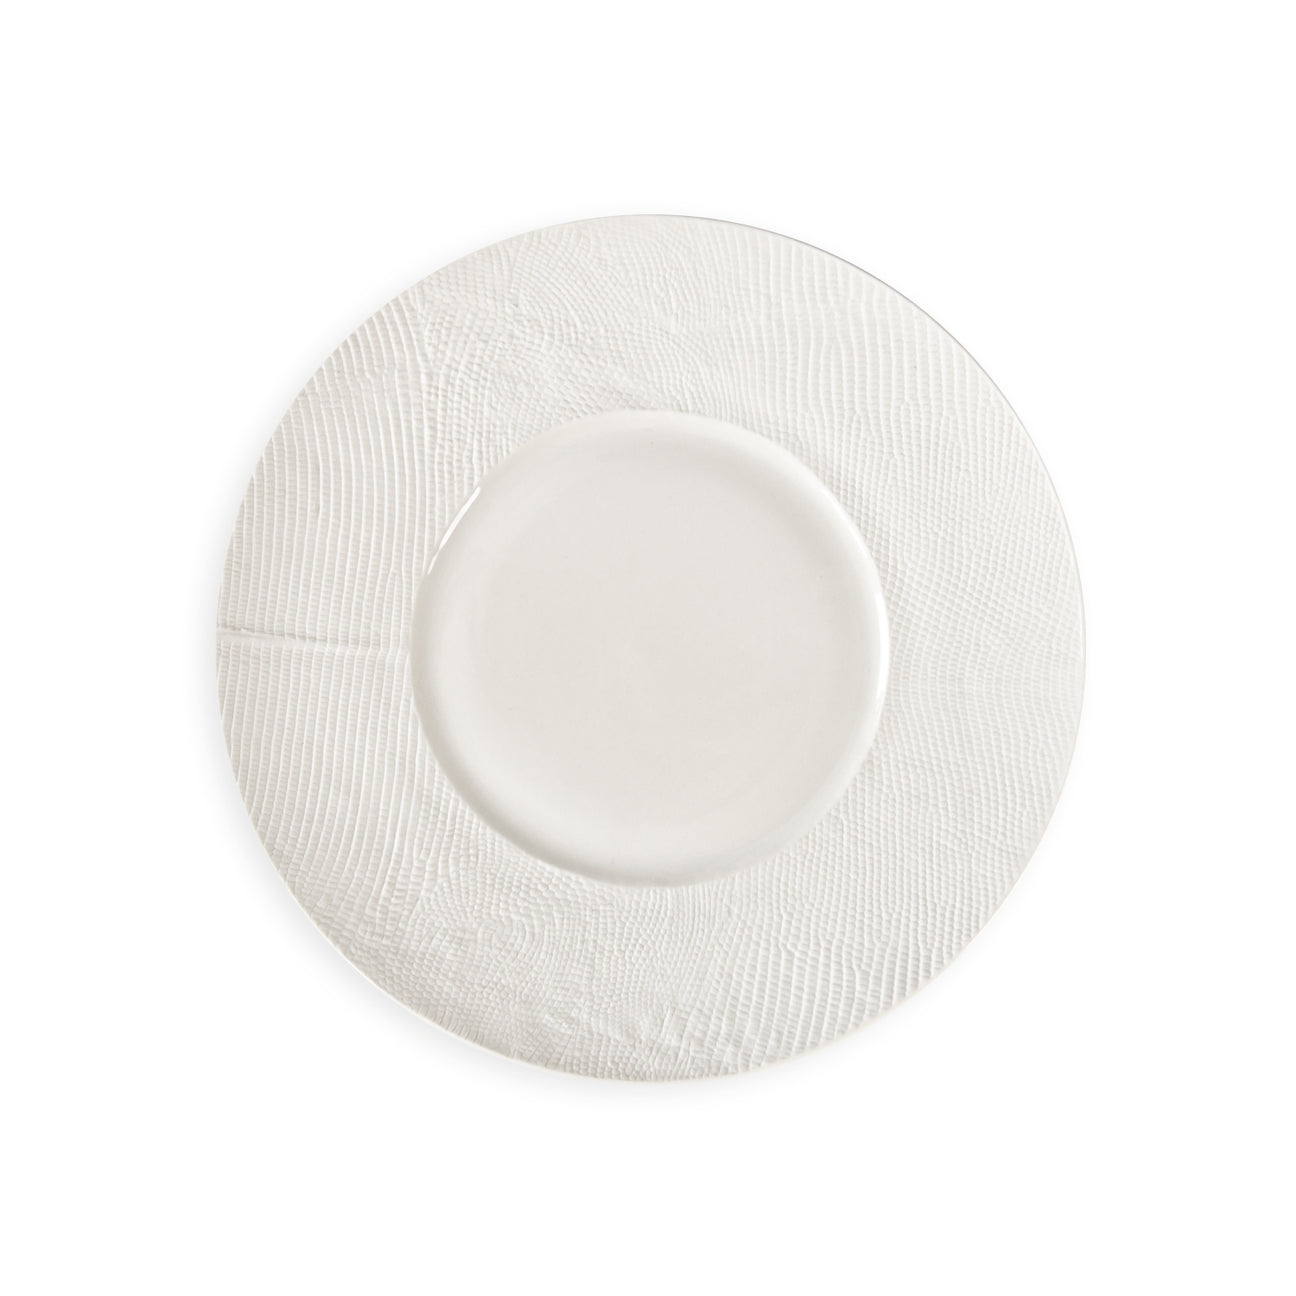 Python White Dessert Plate 